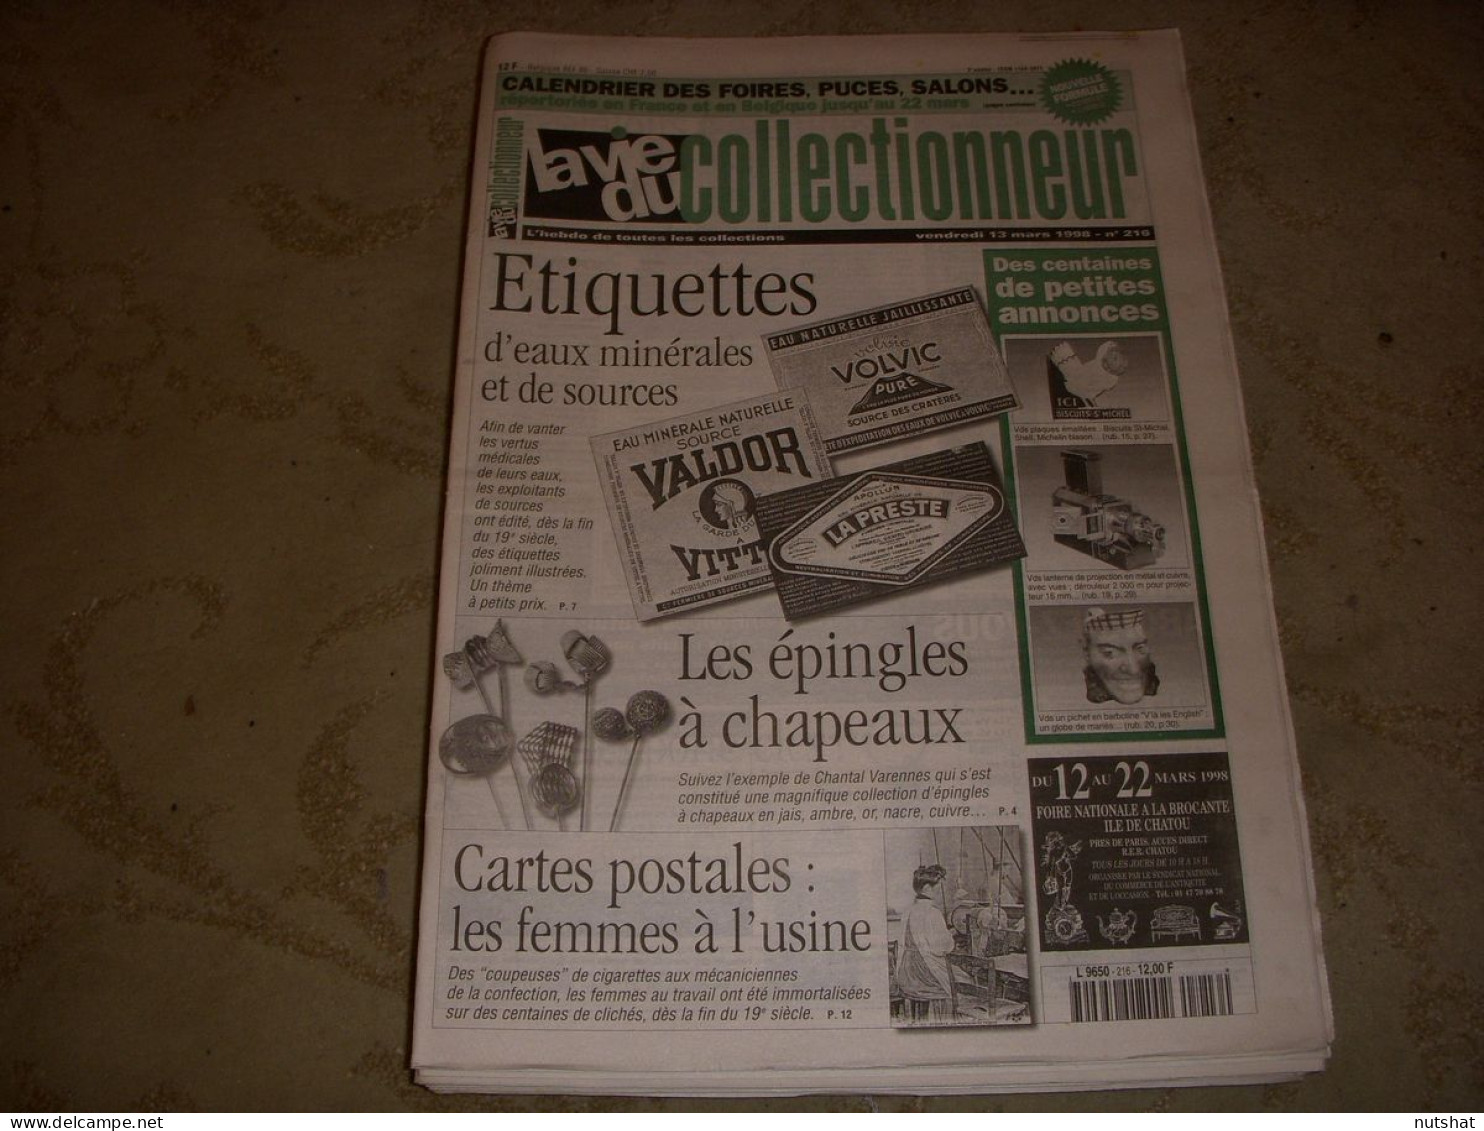 LVC VIE Du COLLECTIONNEUR 216 13.03.1998 ETIQUETTE EAUX CP FEMME A L'USINE  - Brocantes & Collections